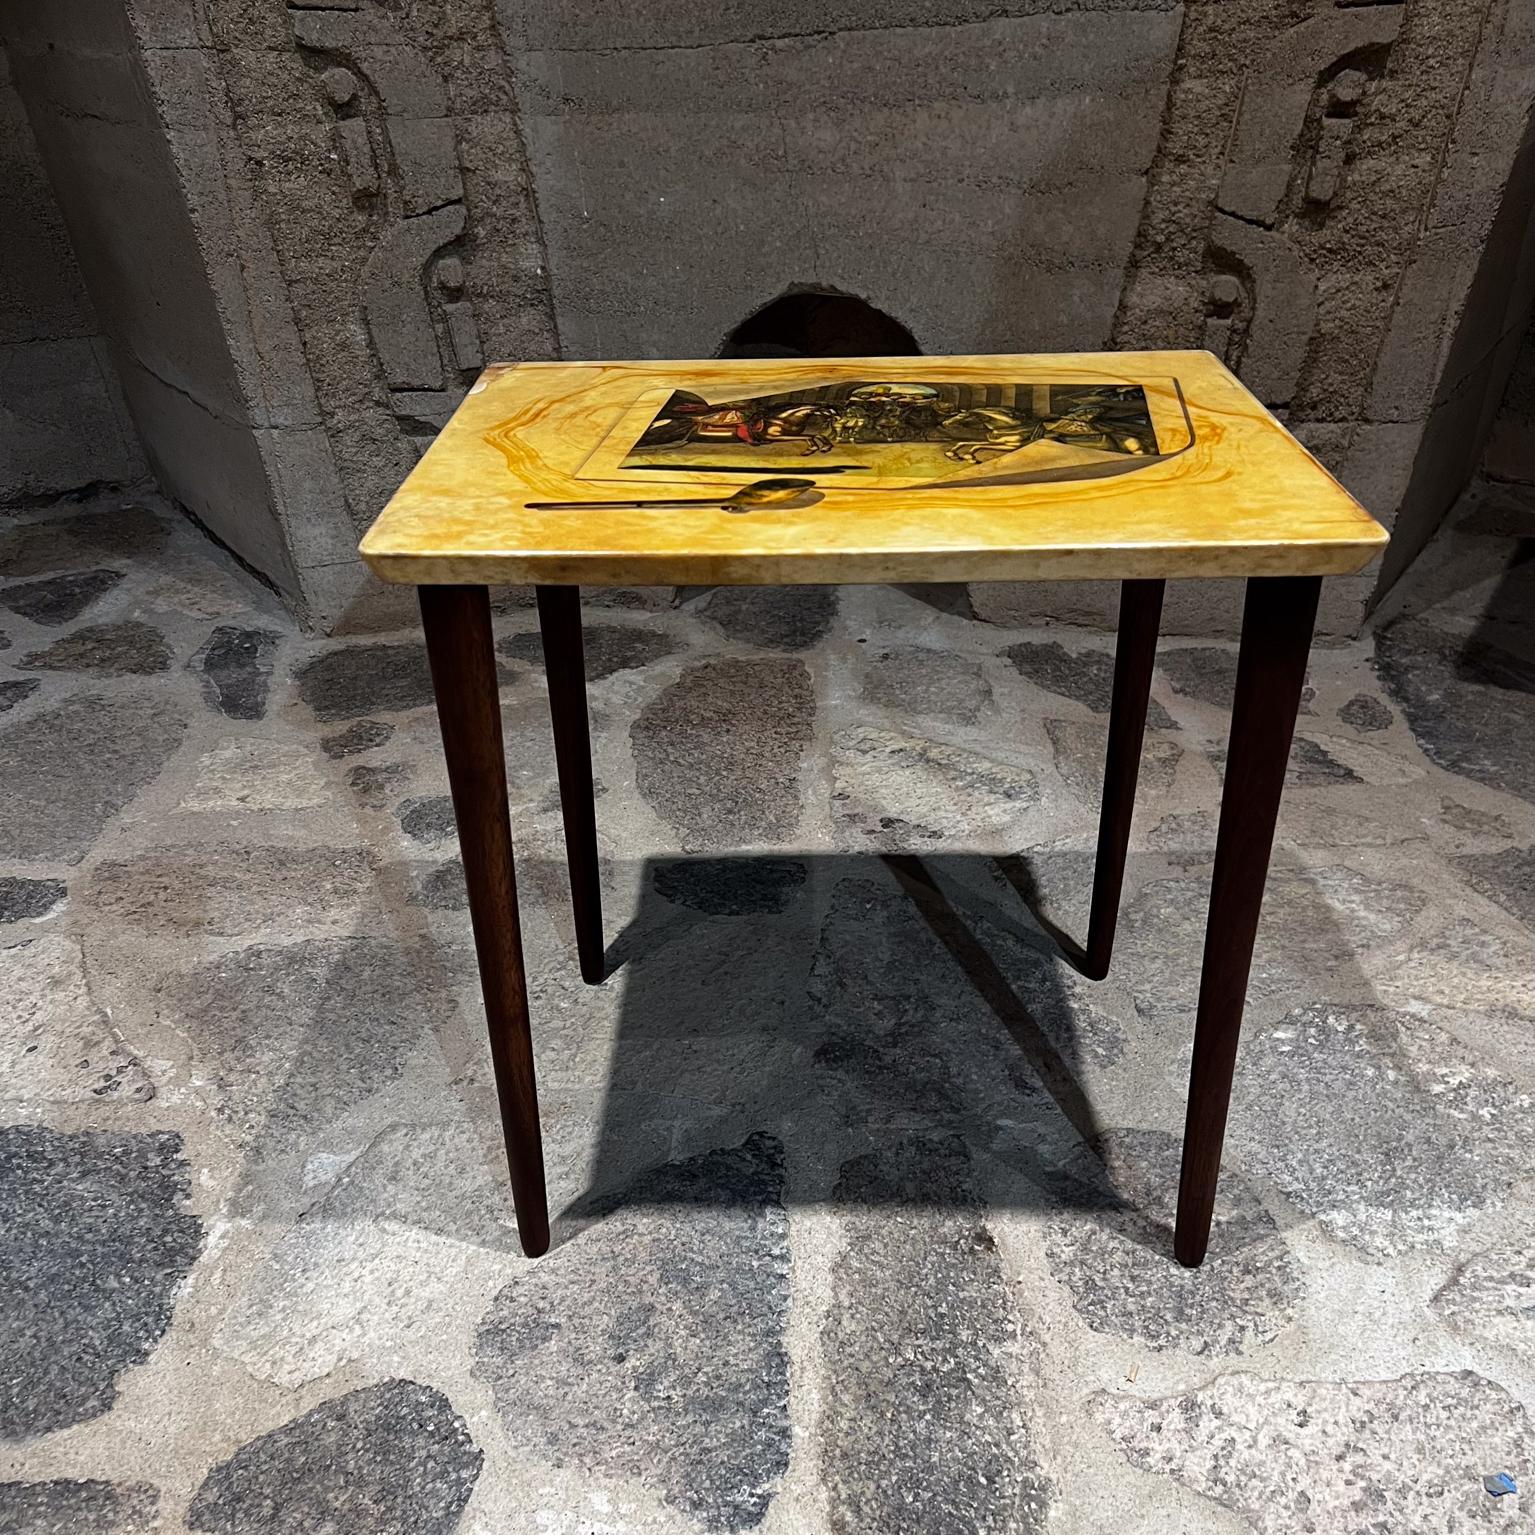 Aldo Tura Beistelltisch Mahagoniholz und Ziegenleder Italien 1950er Jahre
Die Tischplatte ist mit exquisiter Renaissancekunst nach Piero Fornasetti versehen.
Unmarkiert.
19 B x 14,5 T x 19 H
Die Beine können abgenommen werden.
Originaler